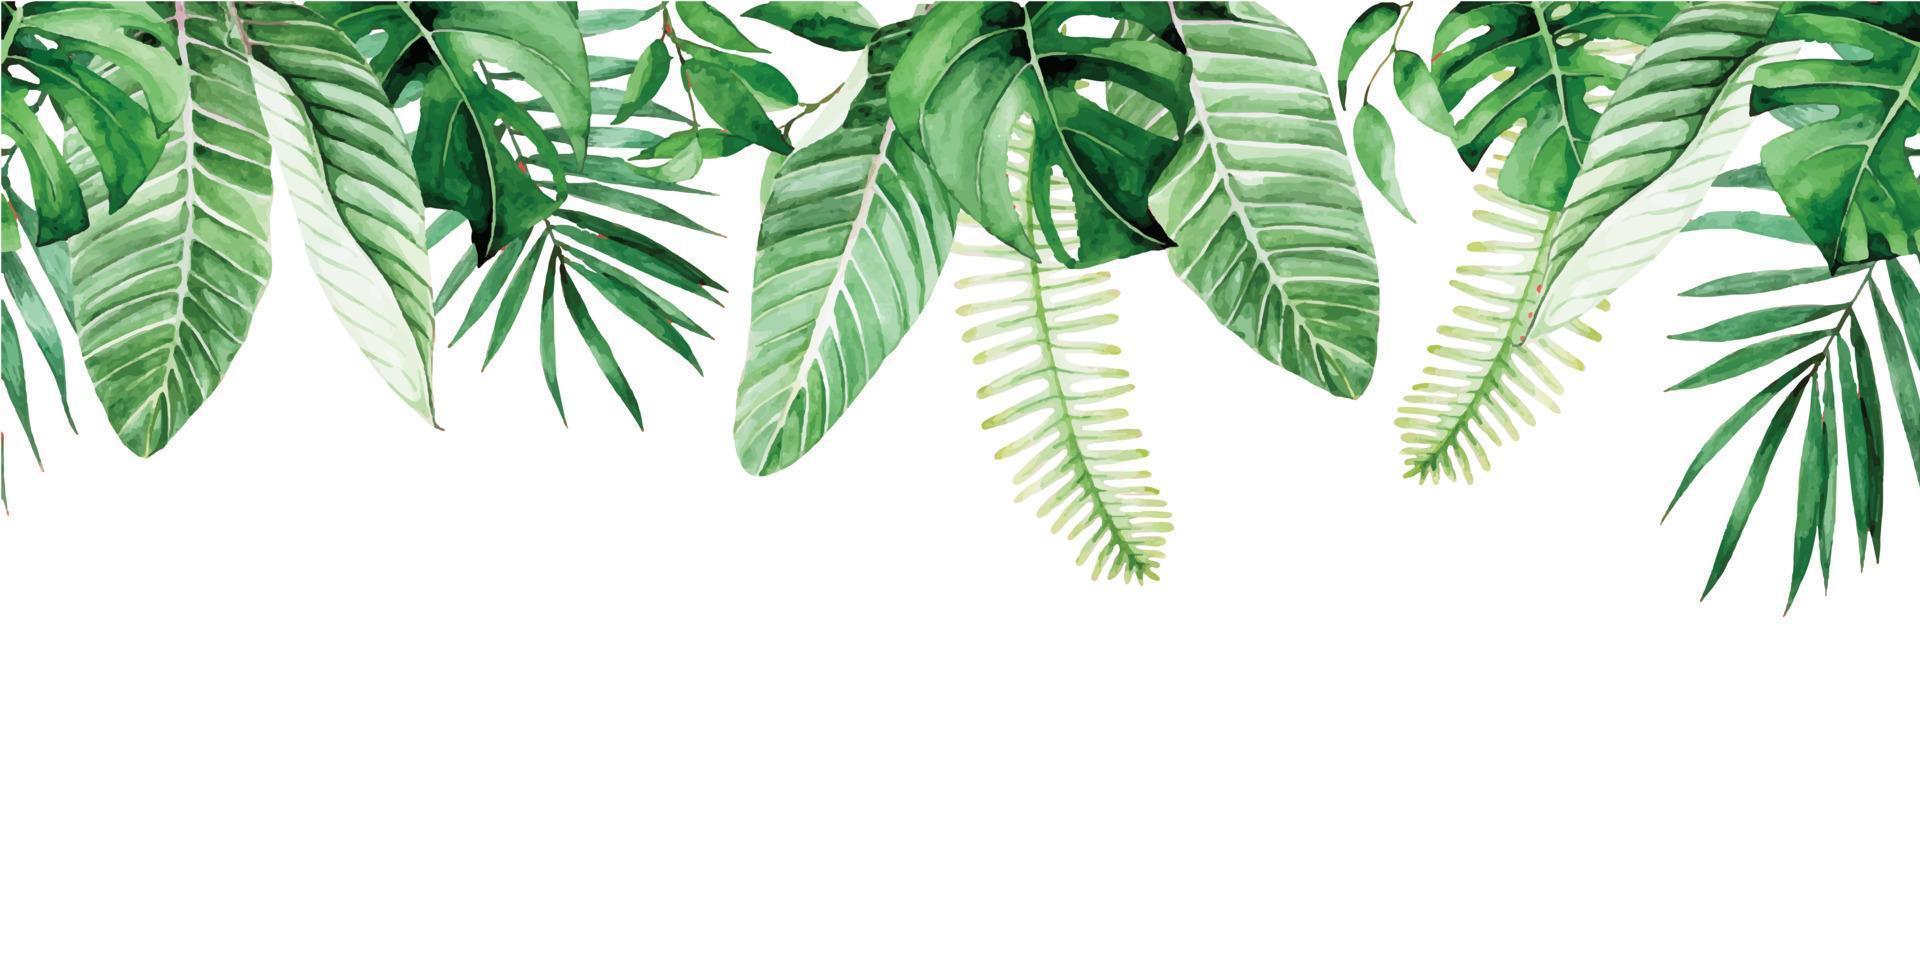 Aquarell nahtlose Grenze, Rahmen mit grünen tropischen Blättern. palmblätter, monstera, bananenblätter isoliert auf weißem hintergrund. Muster, Druck, Webbanner vektor